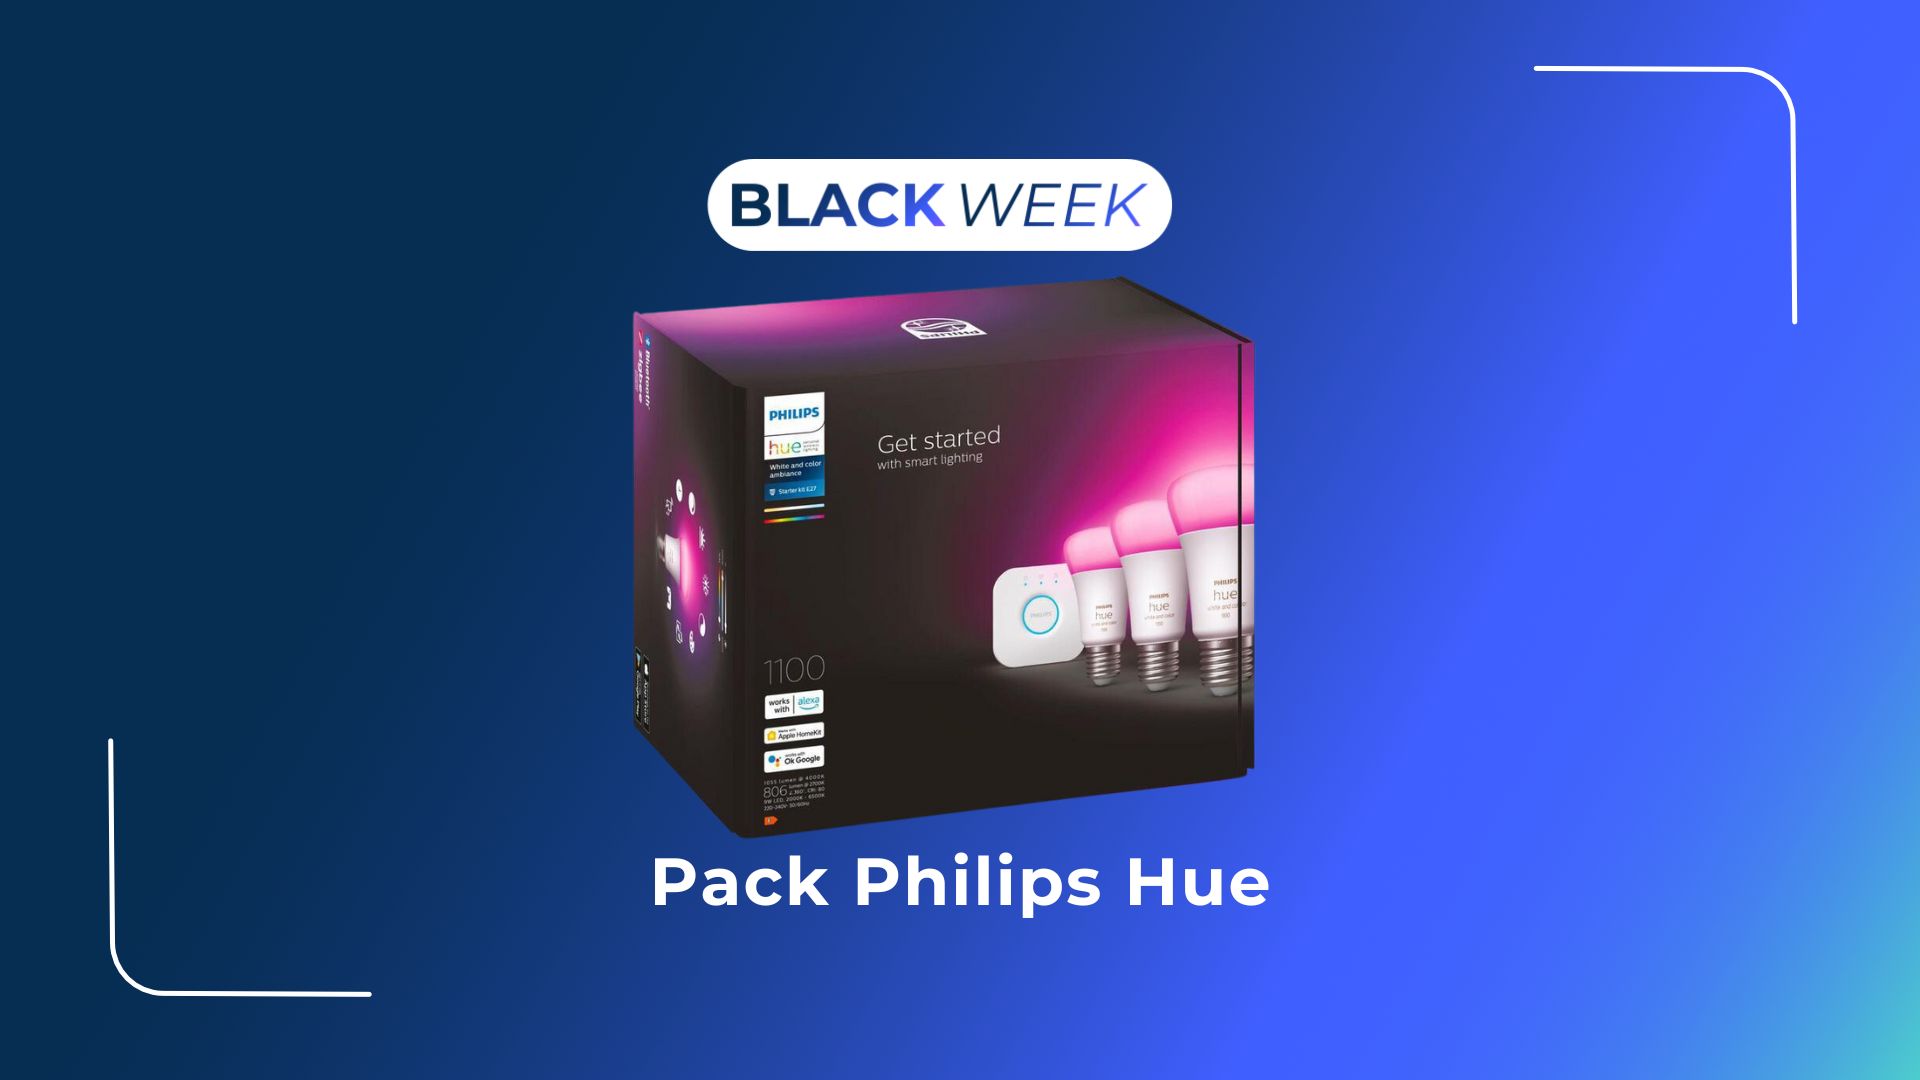 Le Deal du Jour : le kit de démarrage Philips Hue avec 3 ampoules White And  Color est à 169 euros - Numerama